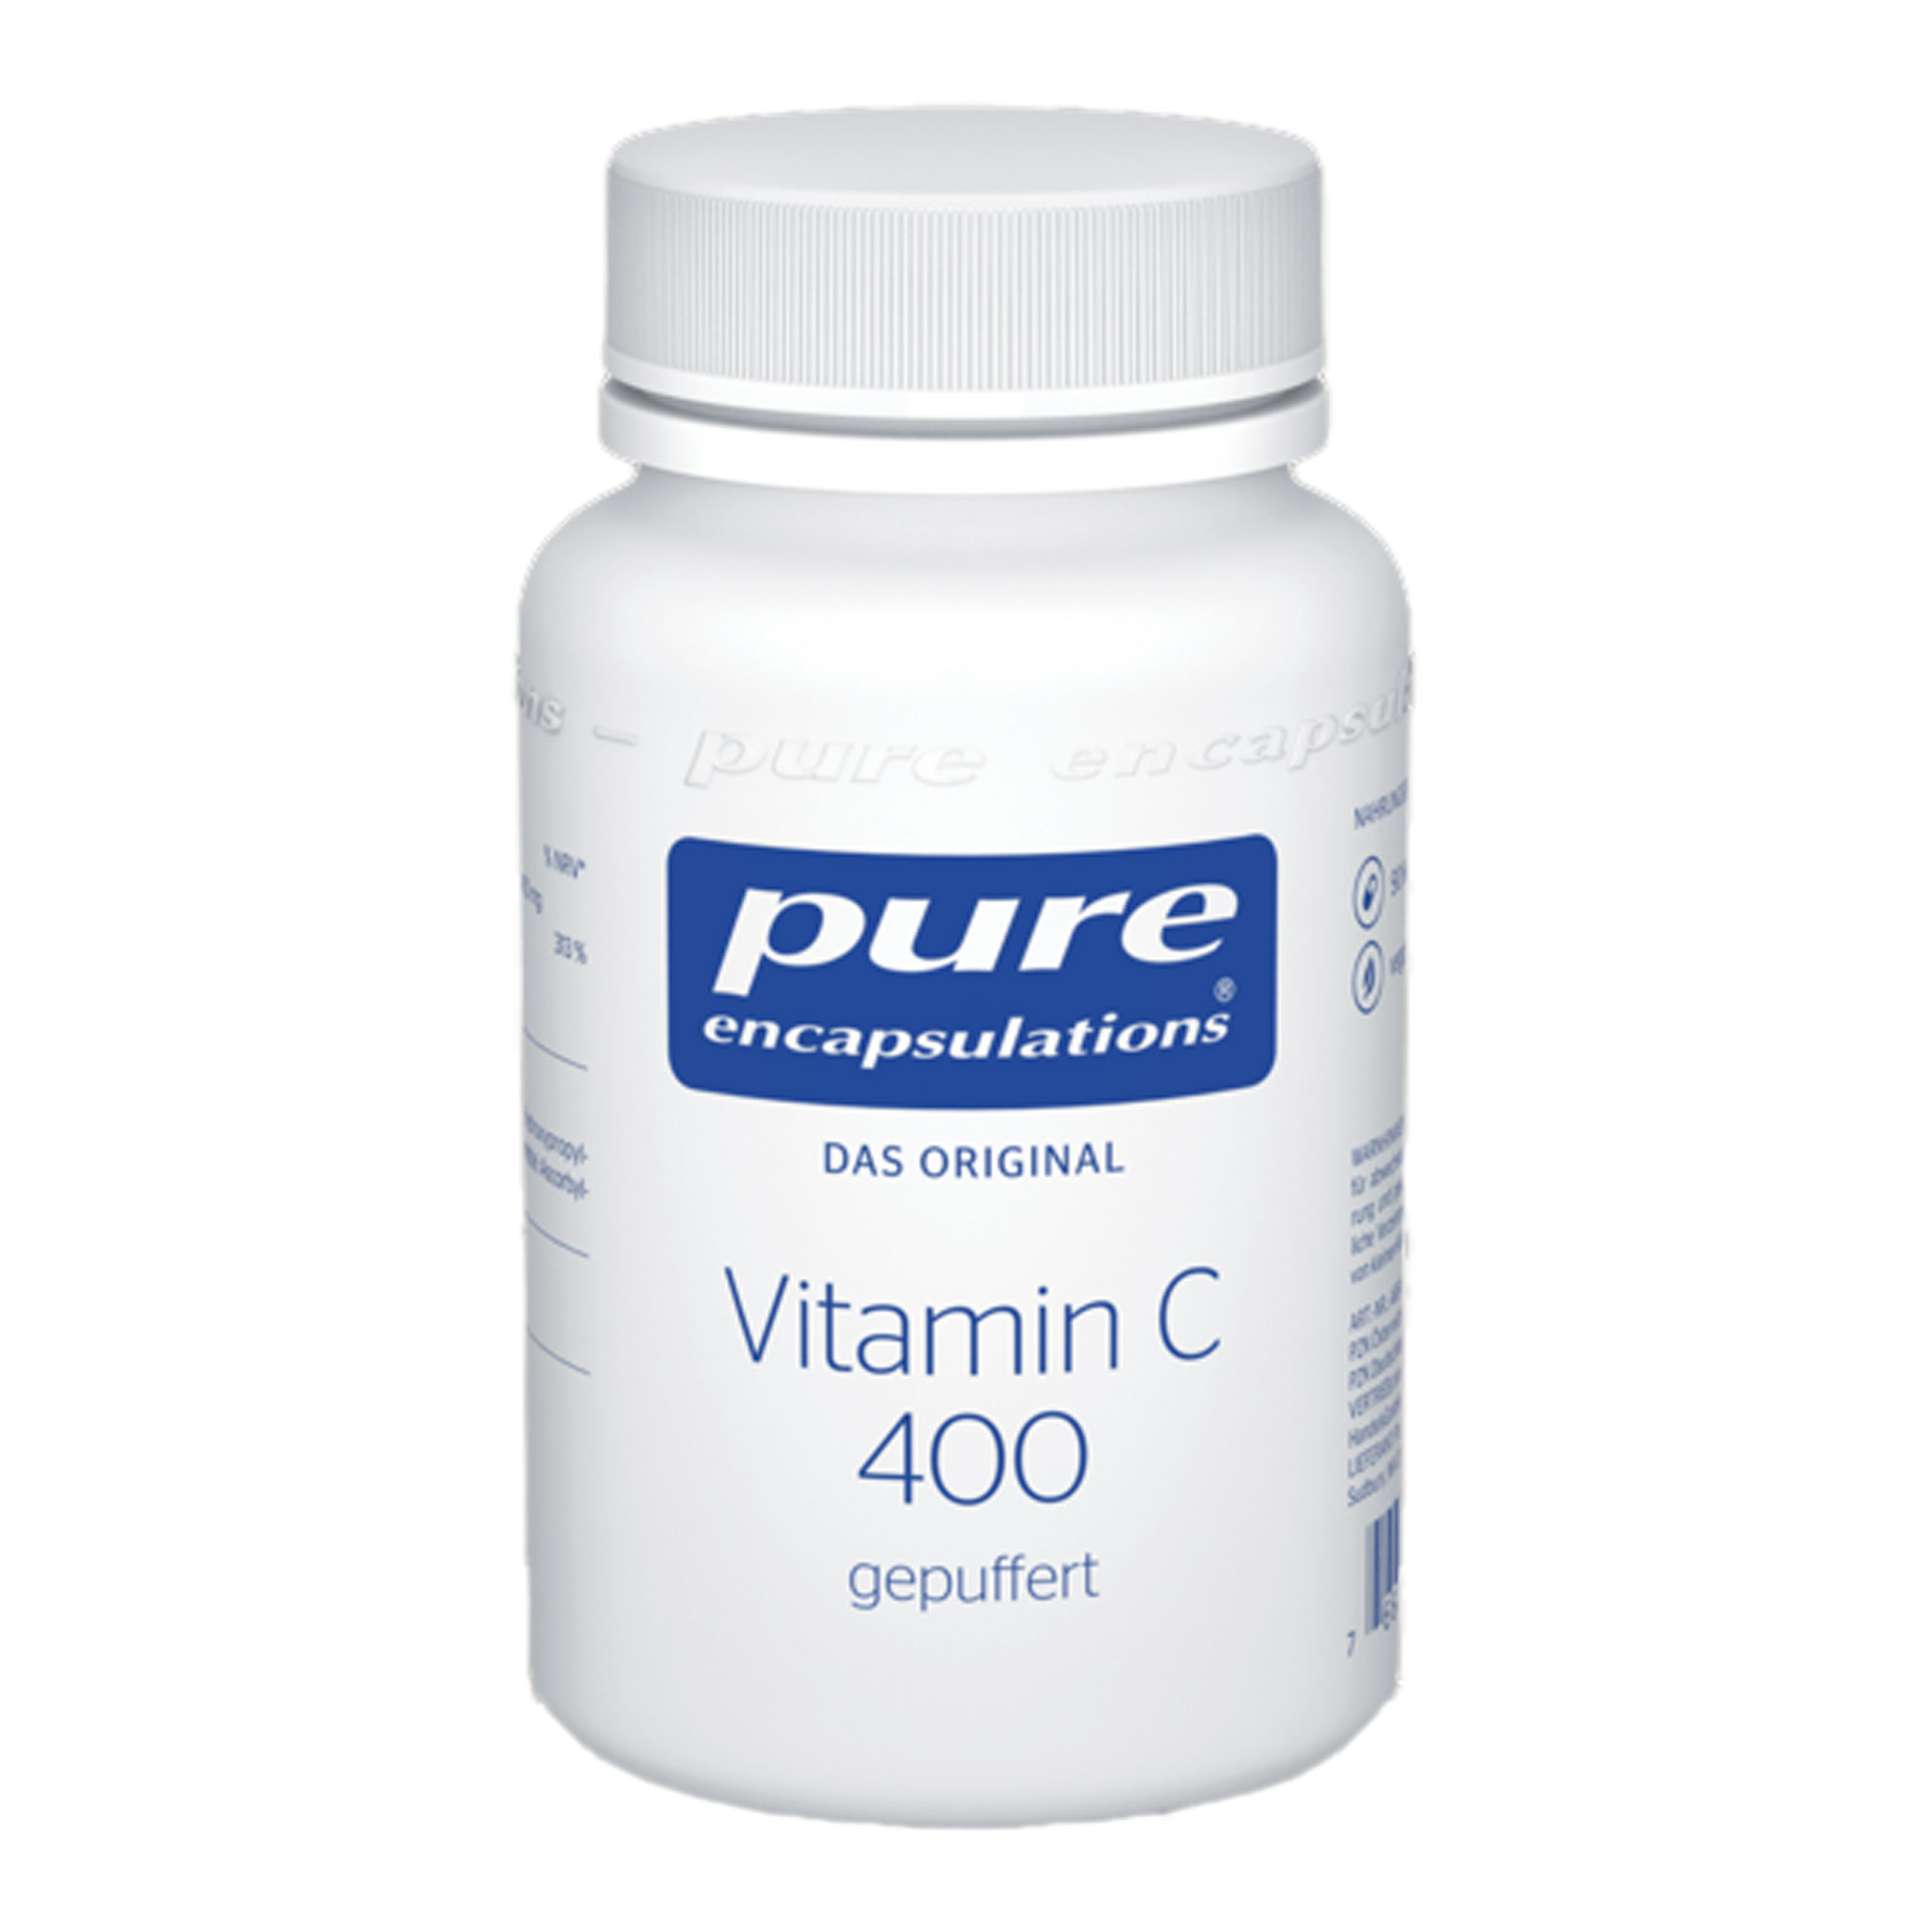 Nahrungsergänzungsmittel mit 400 mg gepuffertem Vitamin C.